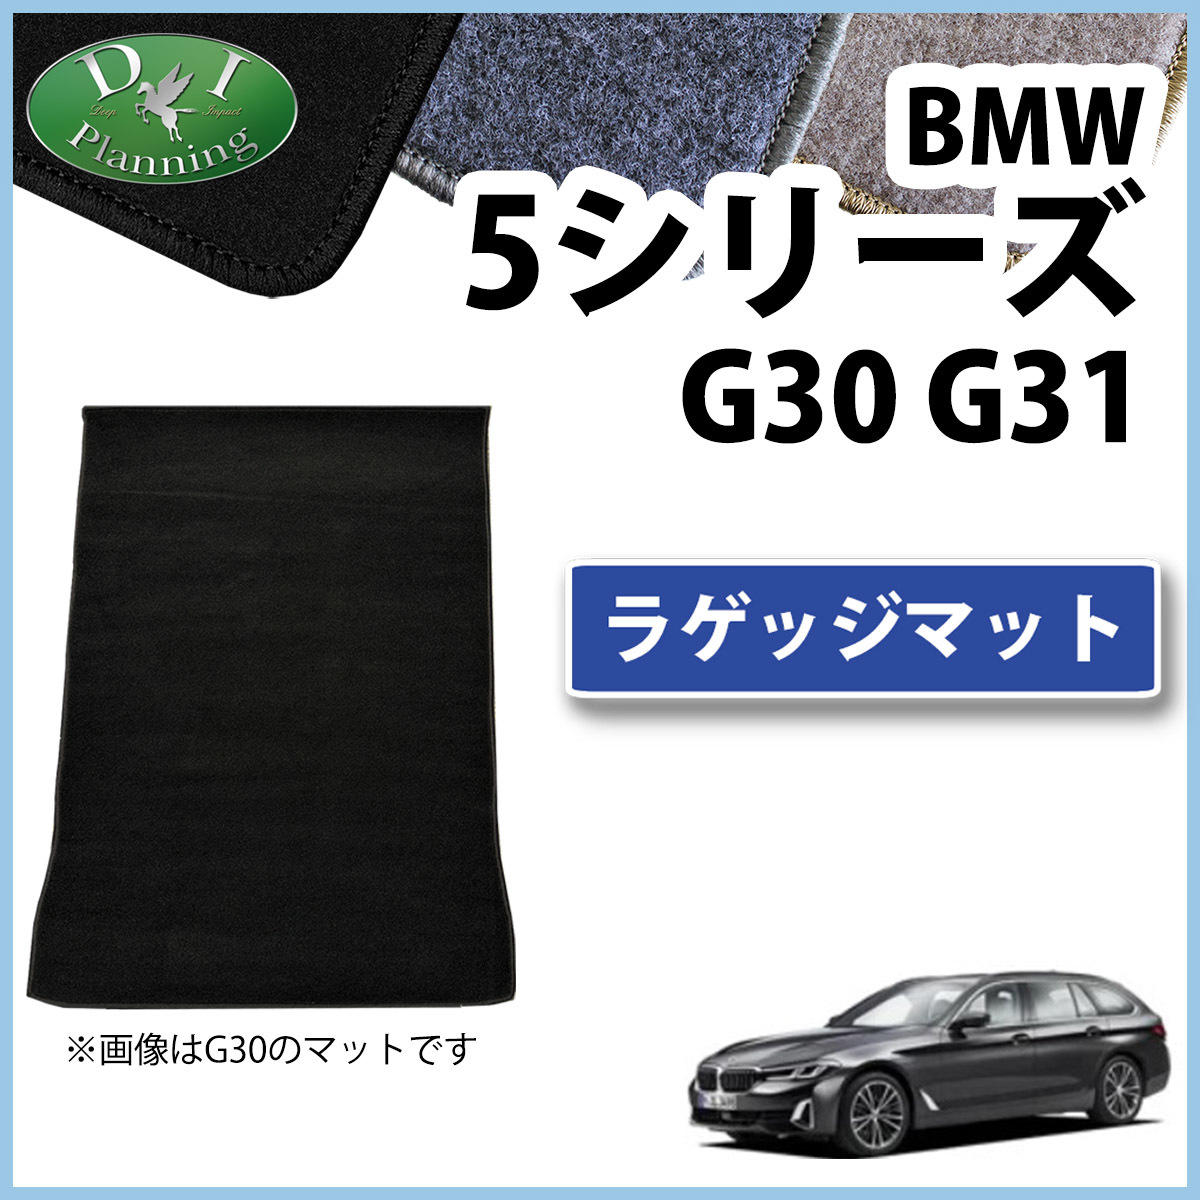 BMW 5シリーズ G30 G31 ラゲッジマット DX ラゲージカバー トランクシート ラゲッジルームマット トランクルームスカバー カーマット_画像1